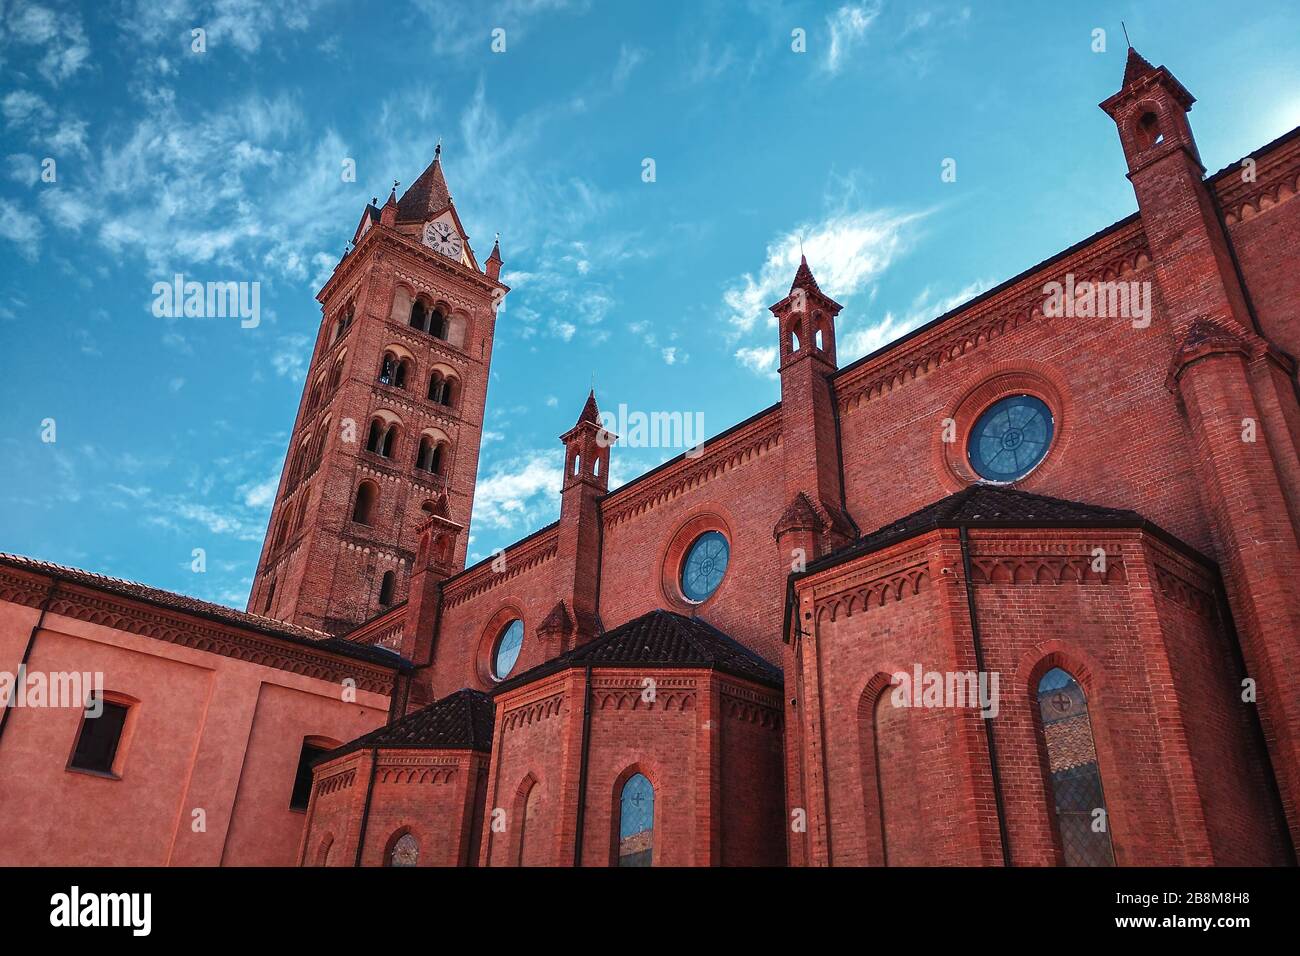 Seitenansicht der Kathedrale San Lorenzo und hoher Belfry unter wunderschönem Himmel mit weißen Wolken in Alba, Piemont, Norditalien. Stockfoto